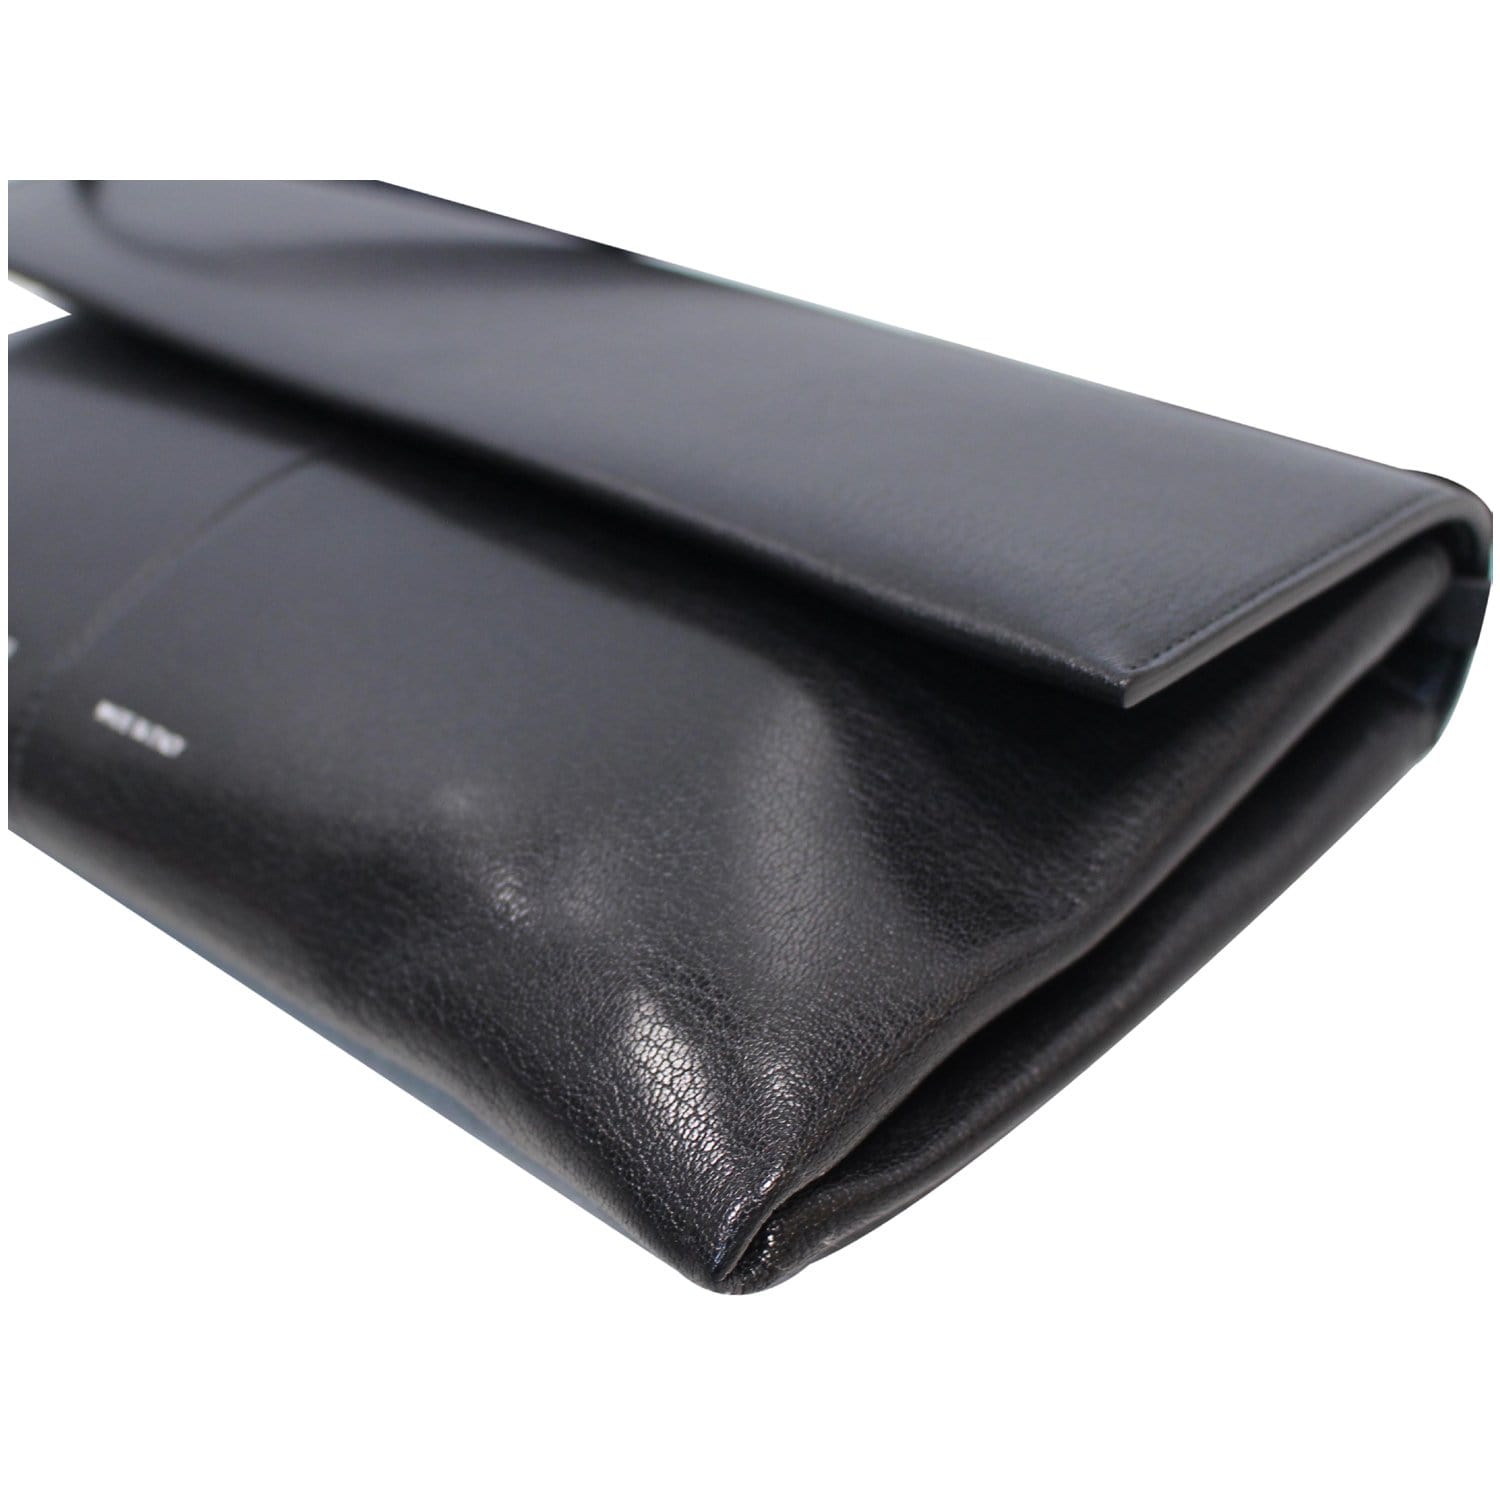 CELINE Folded Clutch Strap Leather Shoulder Bag Black - 15% OFF